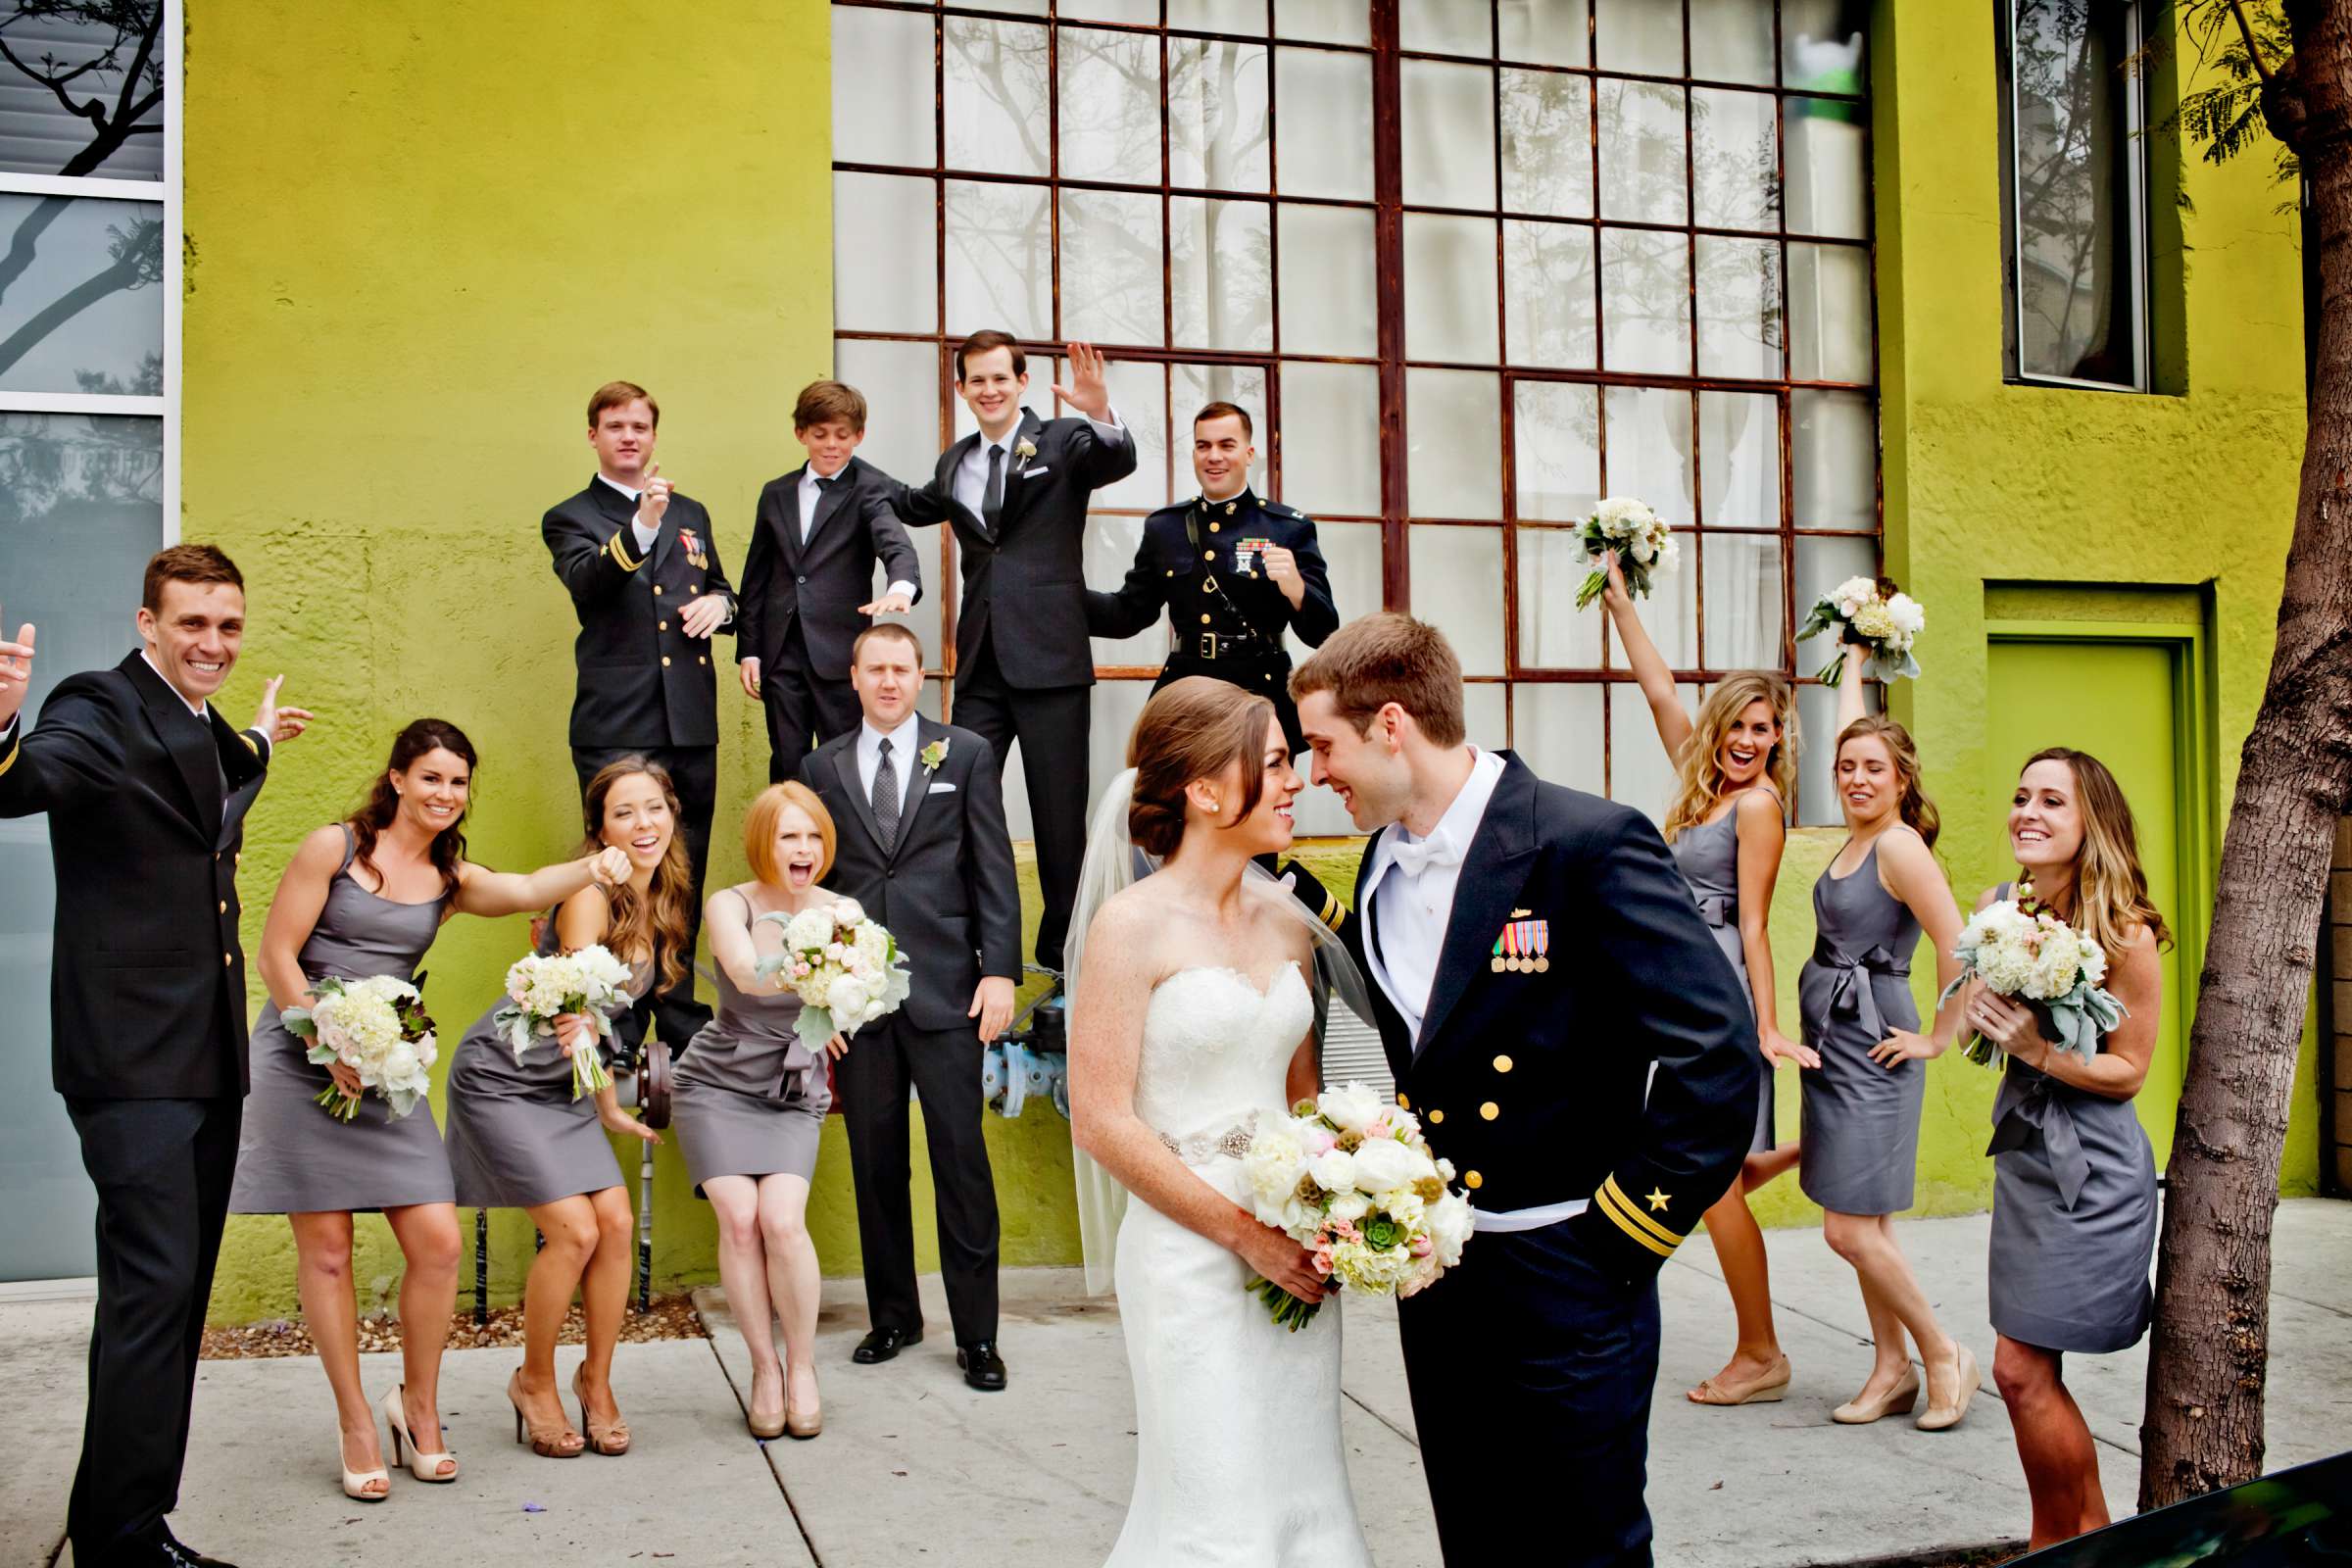 Admiral Kidd Club Wedding coordinated by I Do Weddings, Ashley and Rhett Wedding Photo #358454 by True Photography